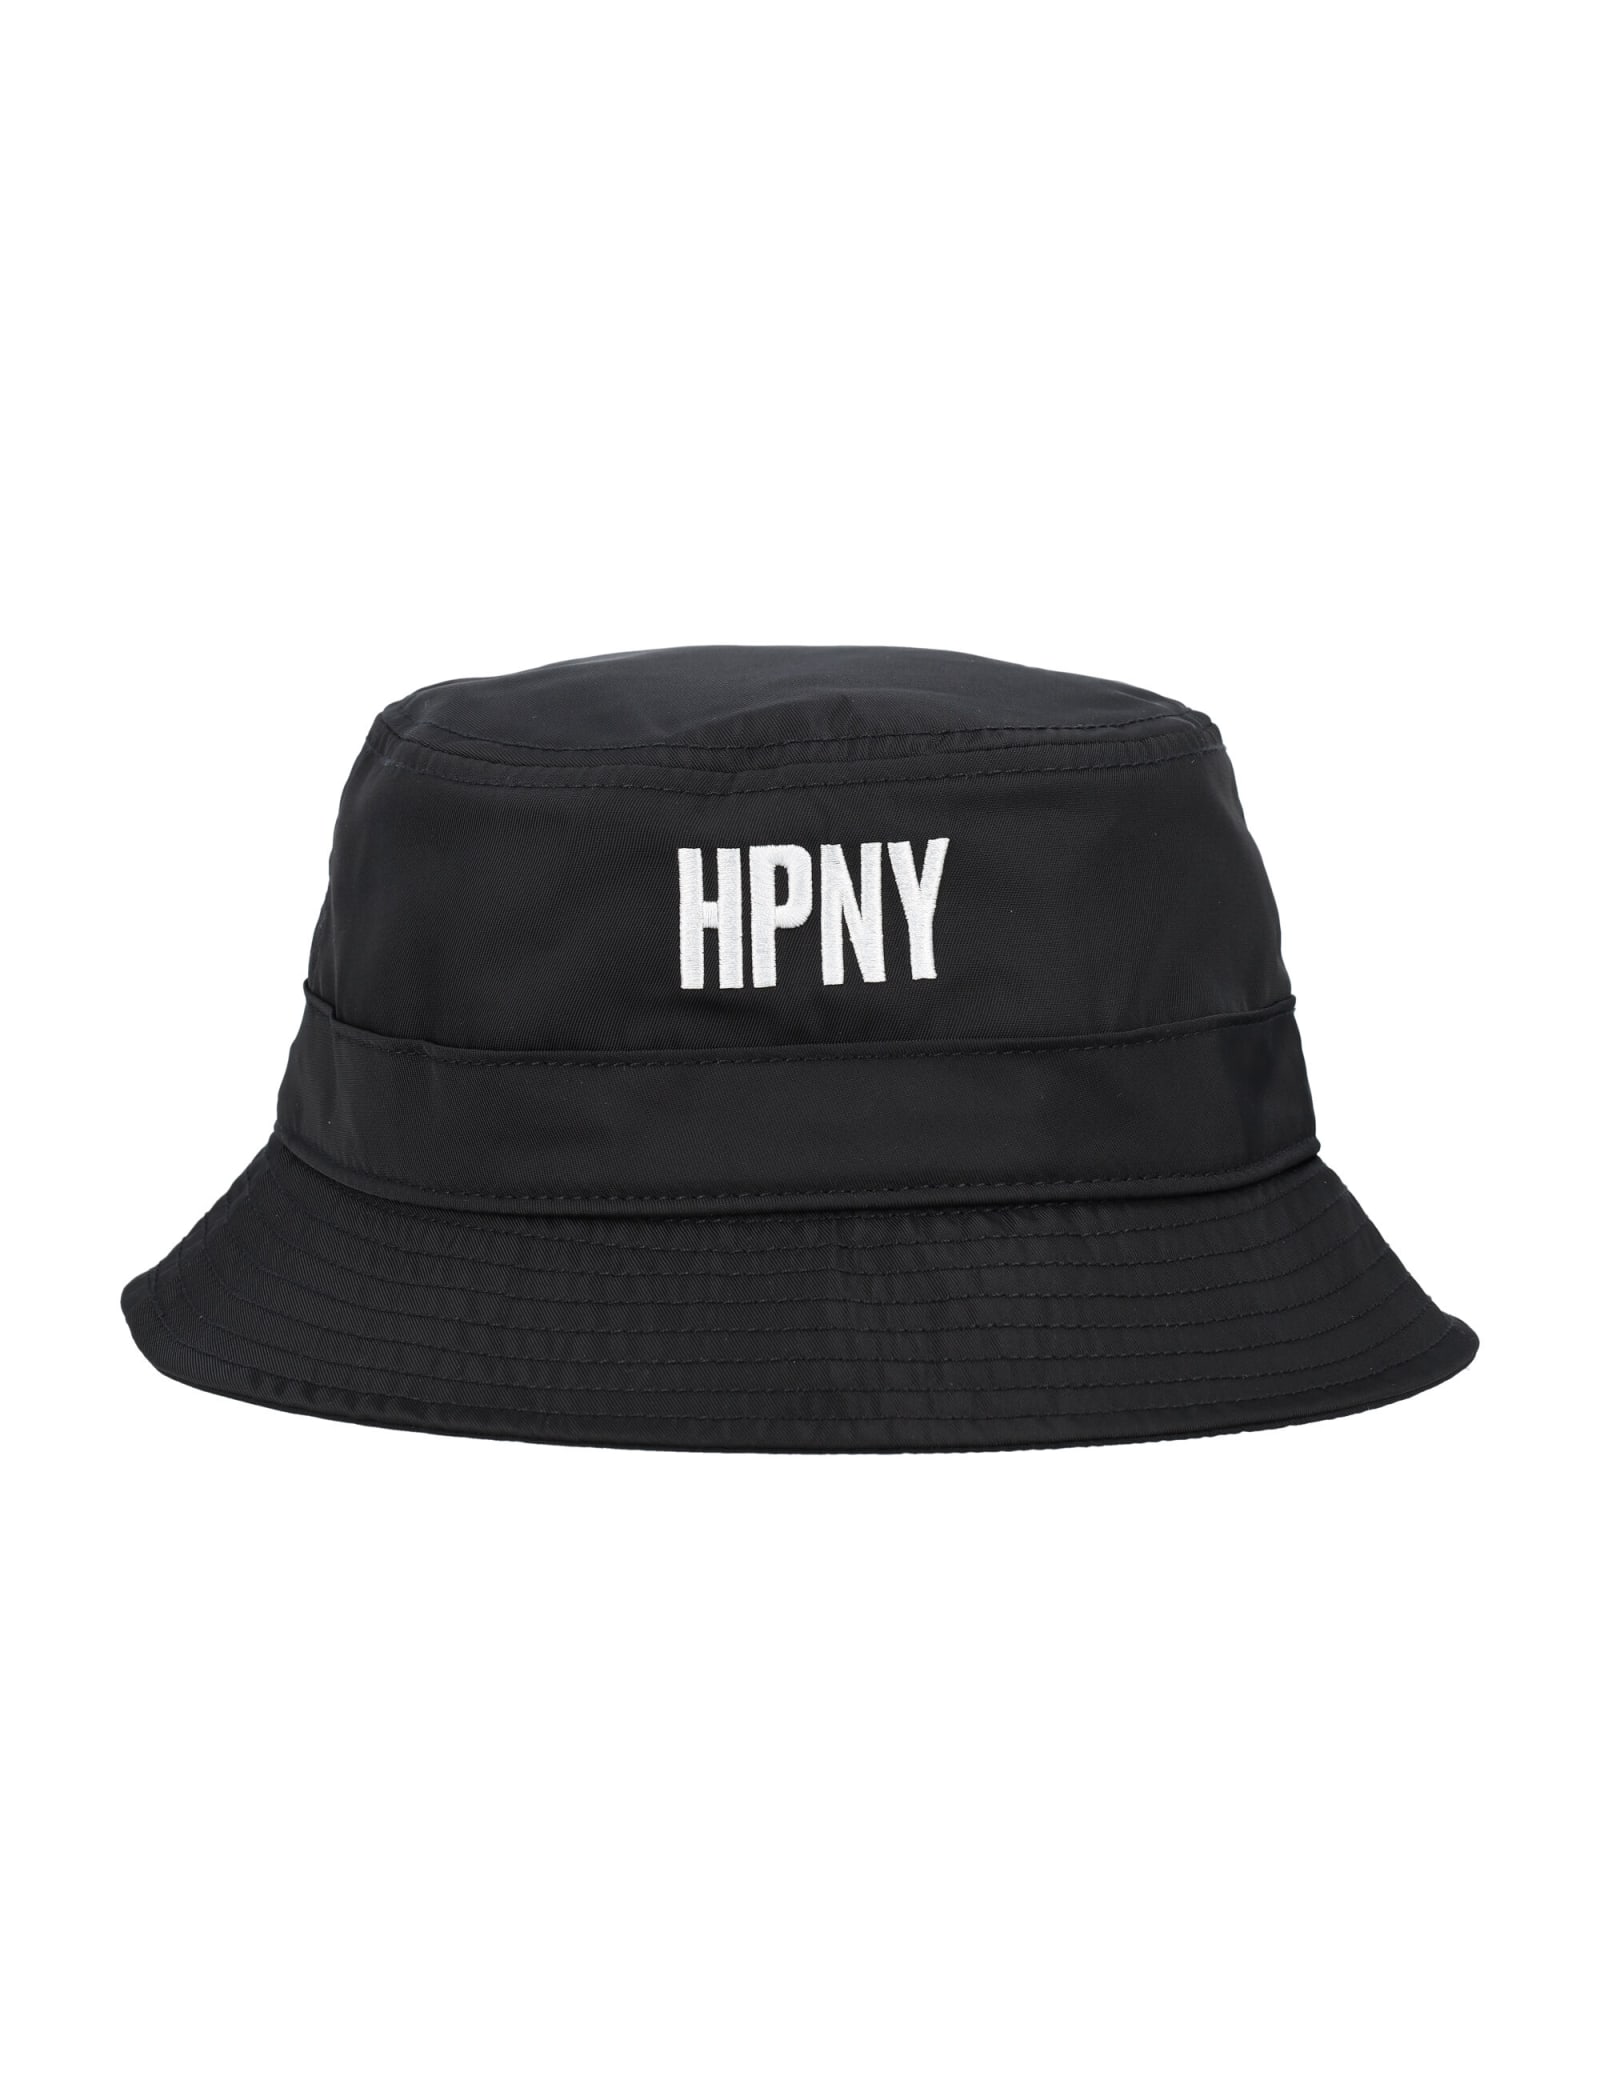 HERON PRESTON HPNY NYLON BUCKET HAT